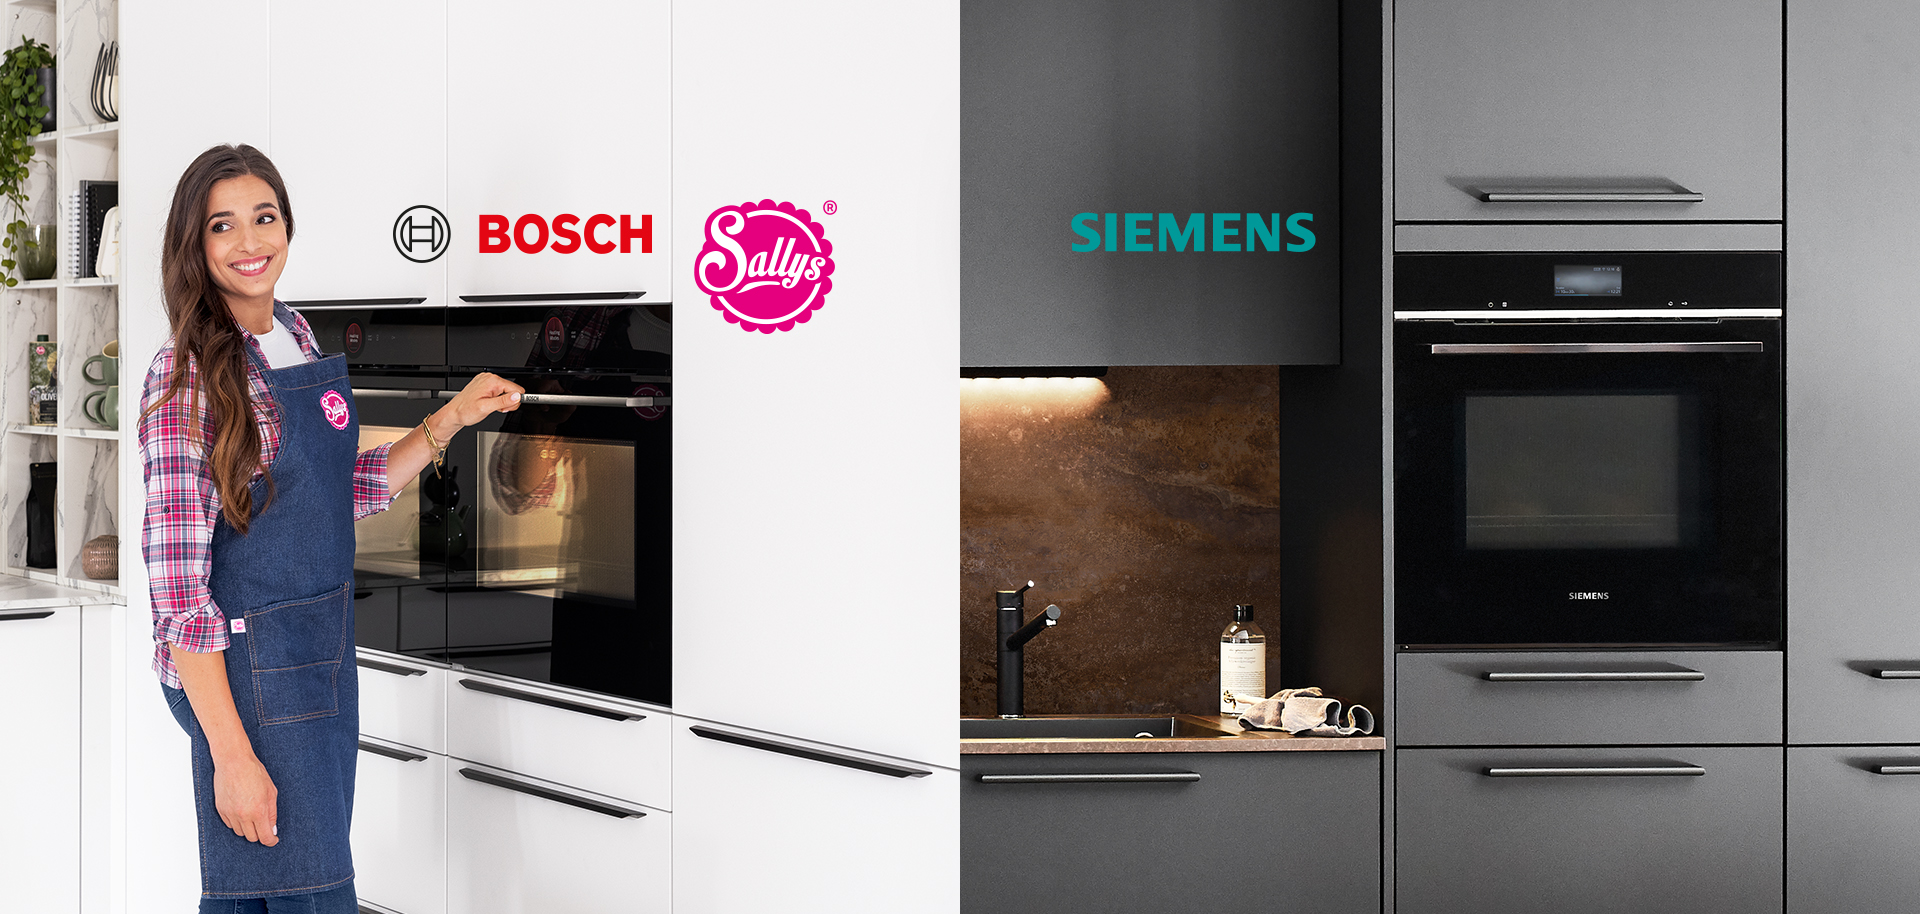 Uśmiechnięta osoba w fartuchu prezentuje piekarnik Bosch, podczas gdy po drugiej stronie pokazana jest nowoczesna kuchnia Siemens z eleganckimi urządzeniami.